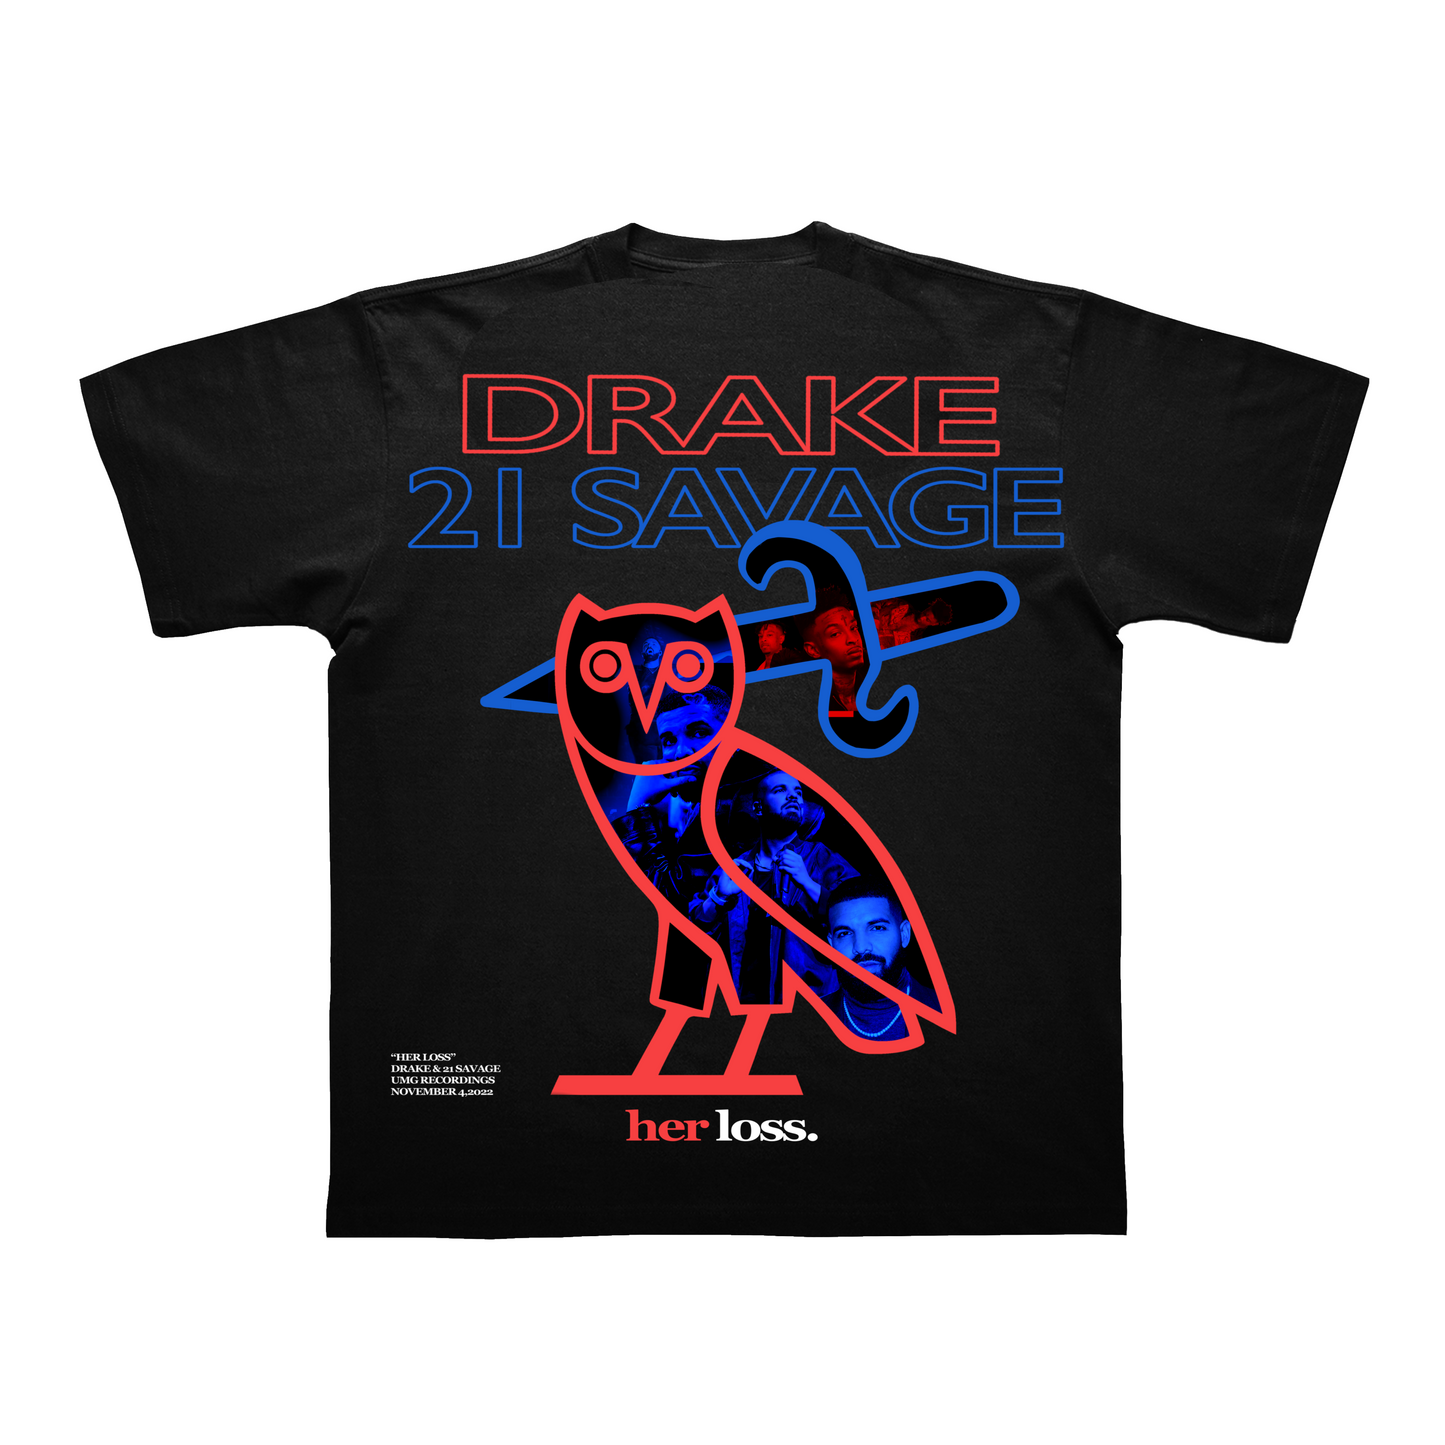 Drake X 21 Savage - Her Loss